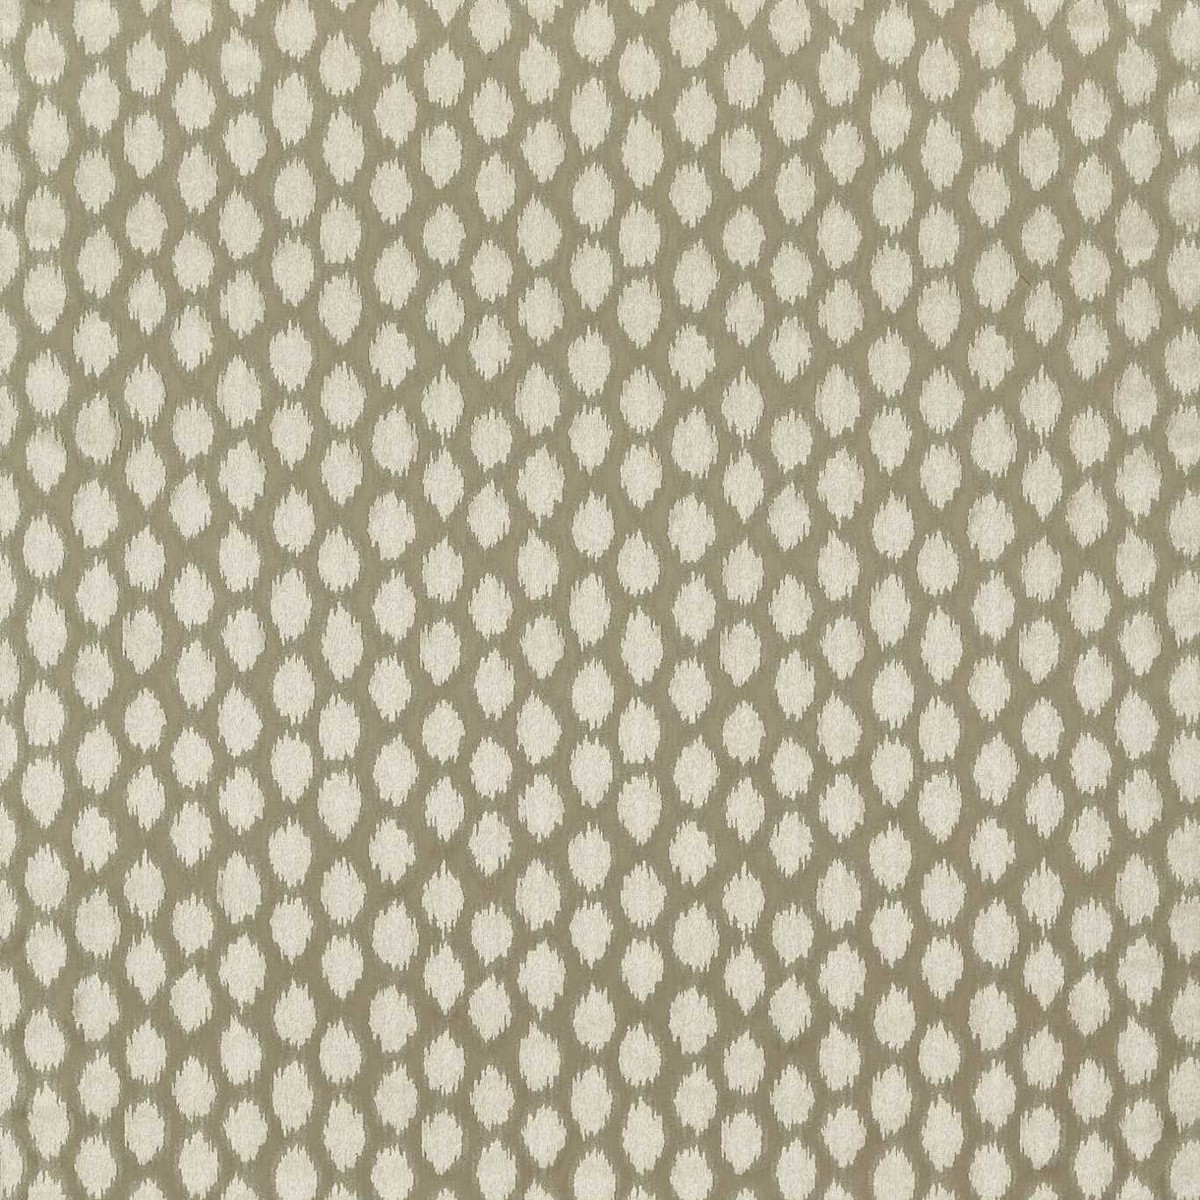 Ikat Spot Stone Fabric by Zoffany